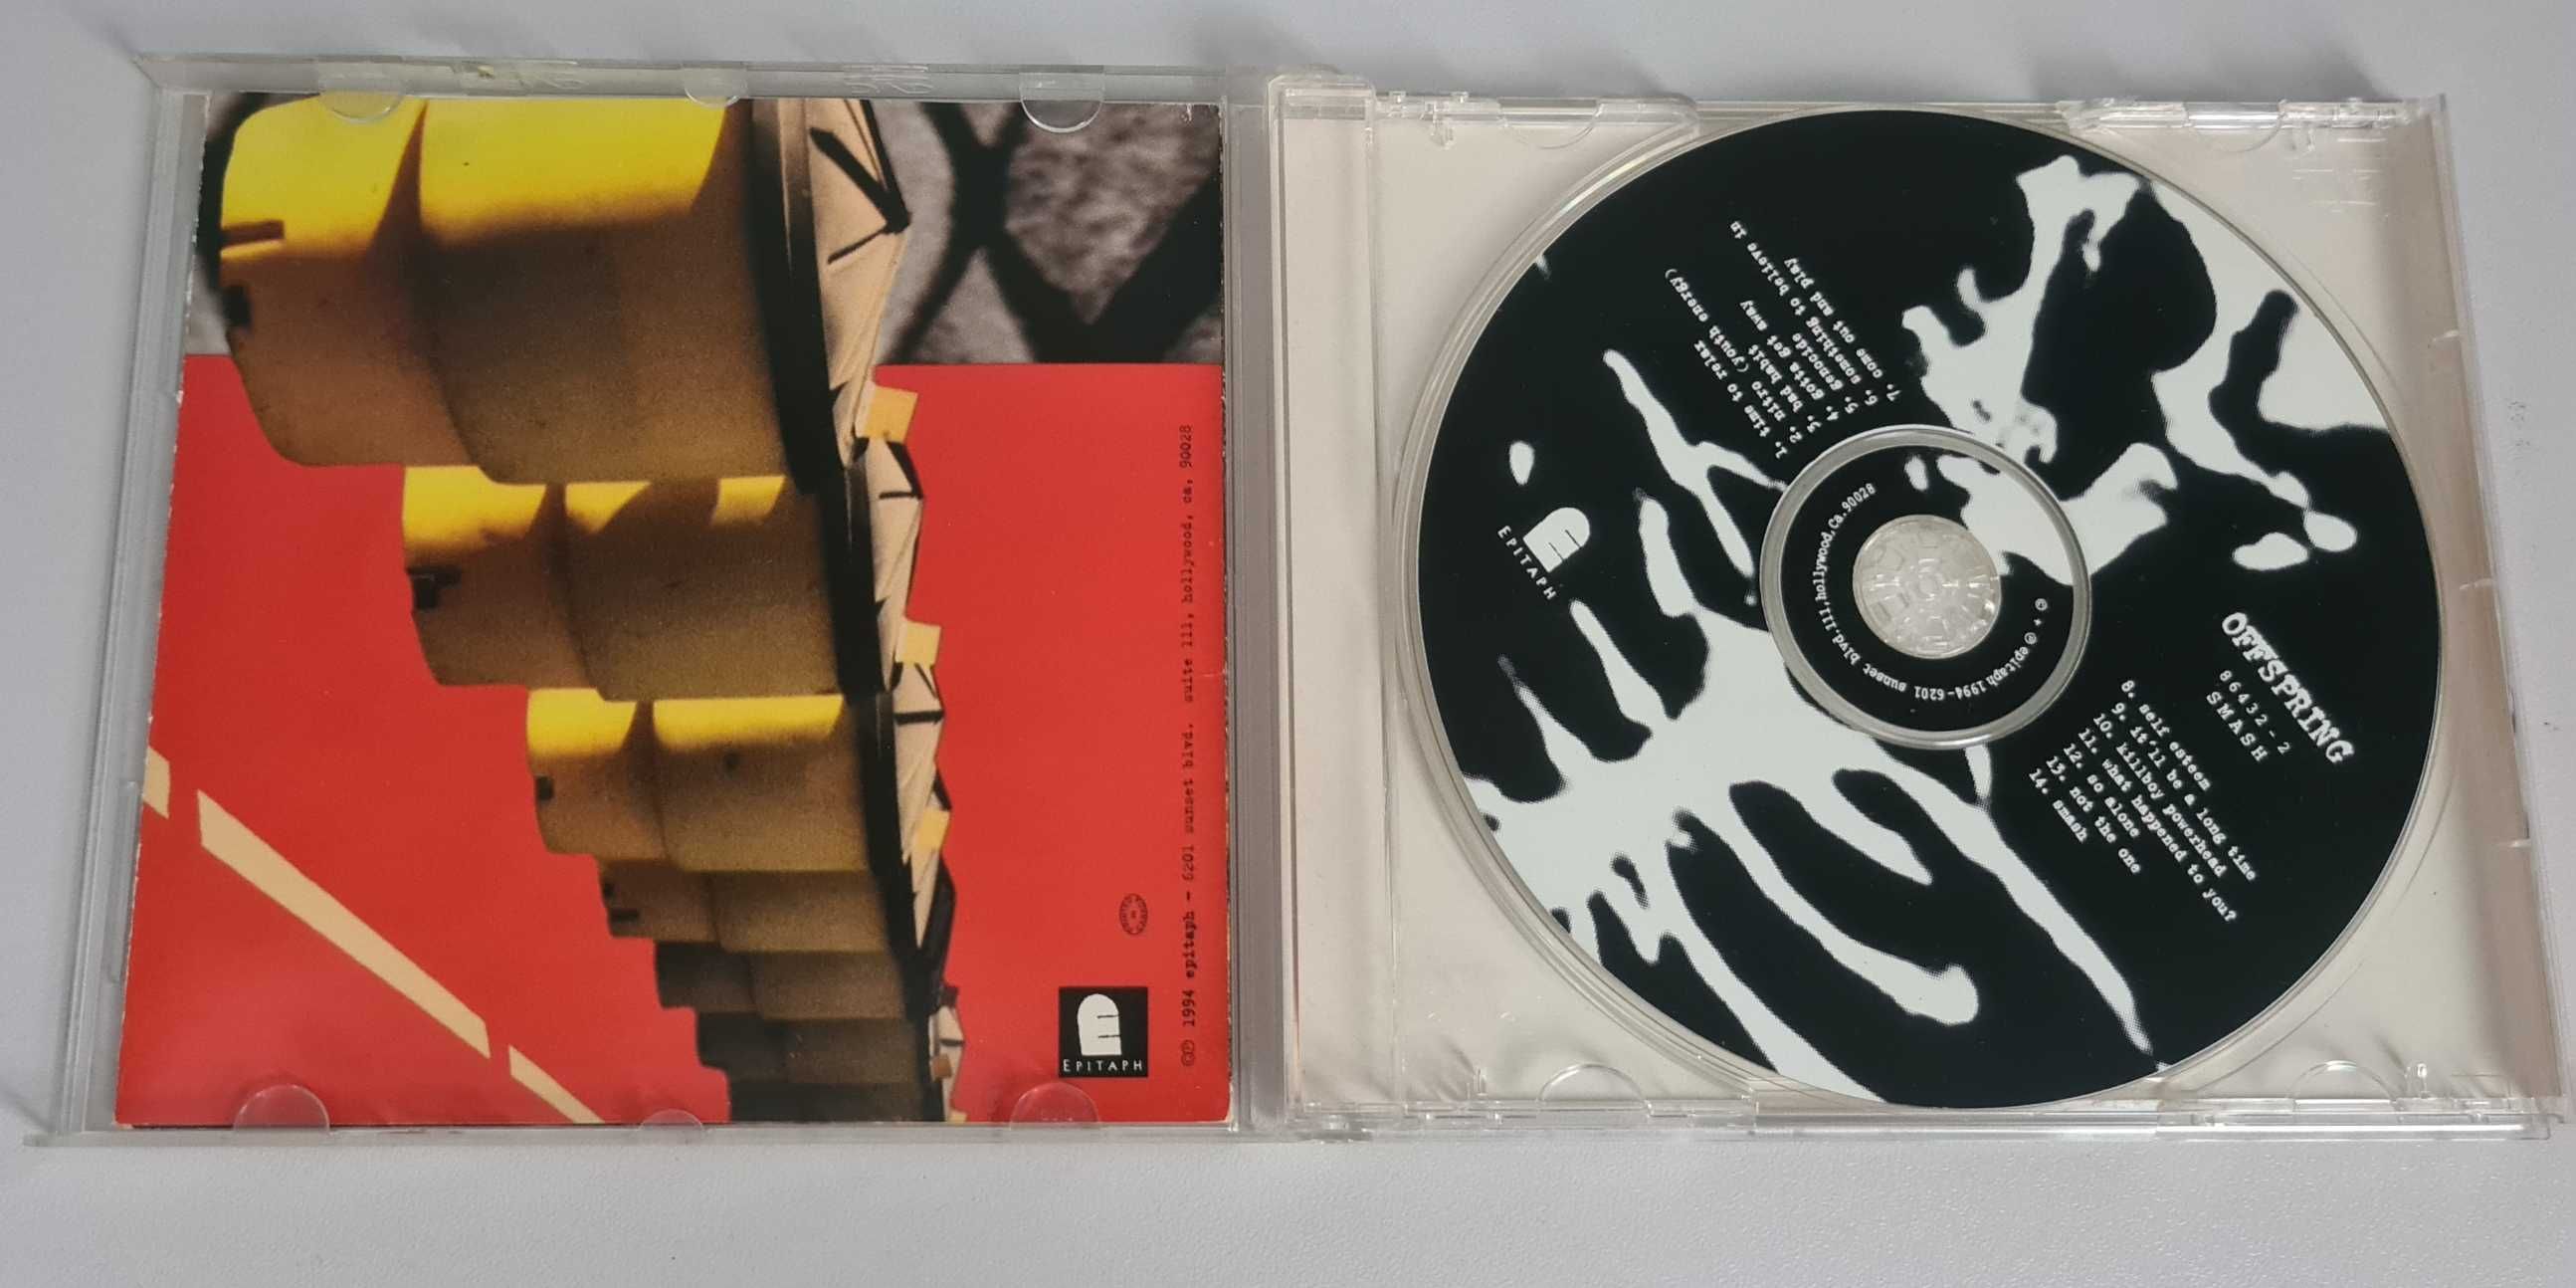 Offspring- Smash płyta CD